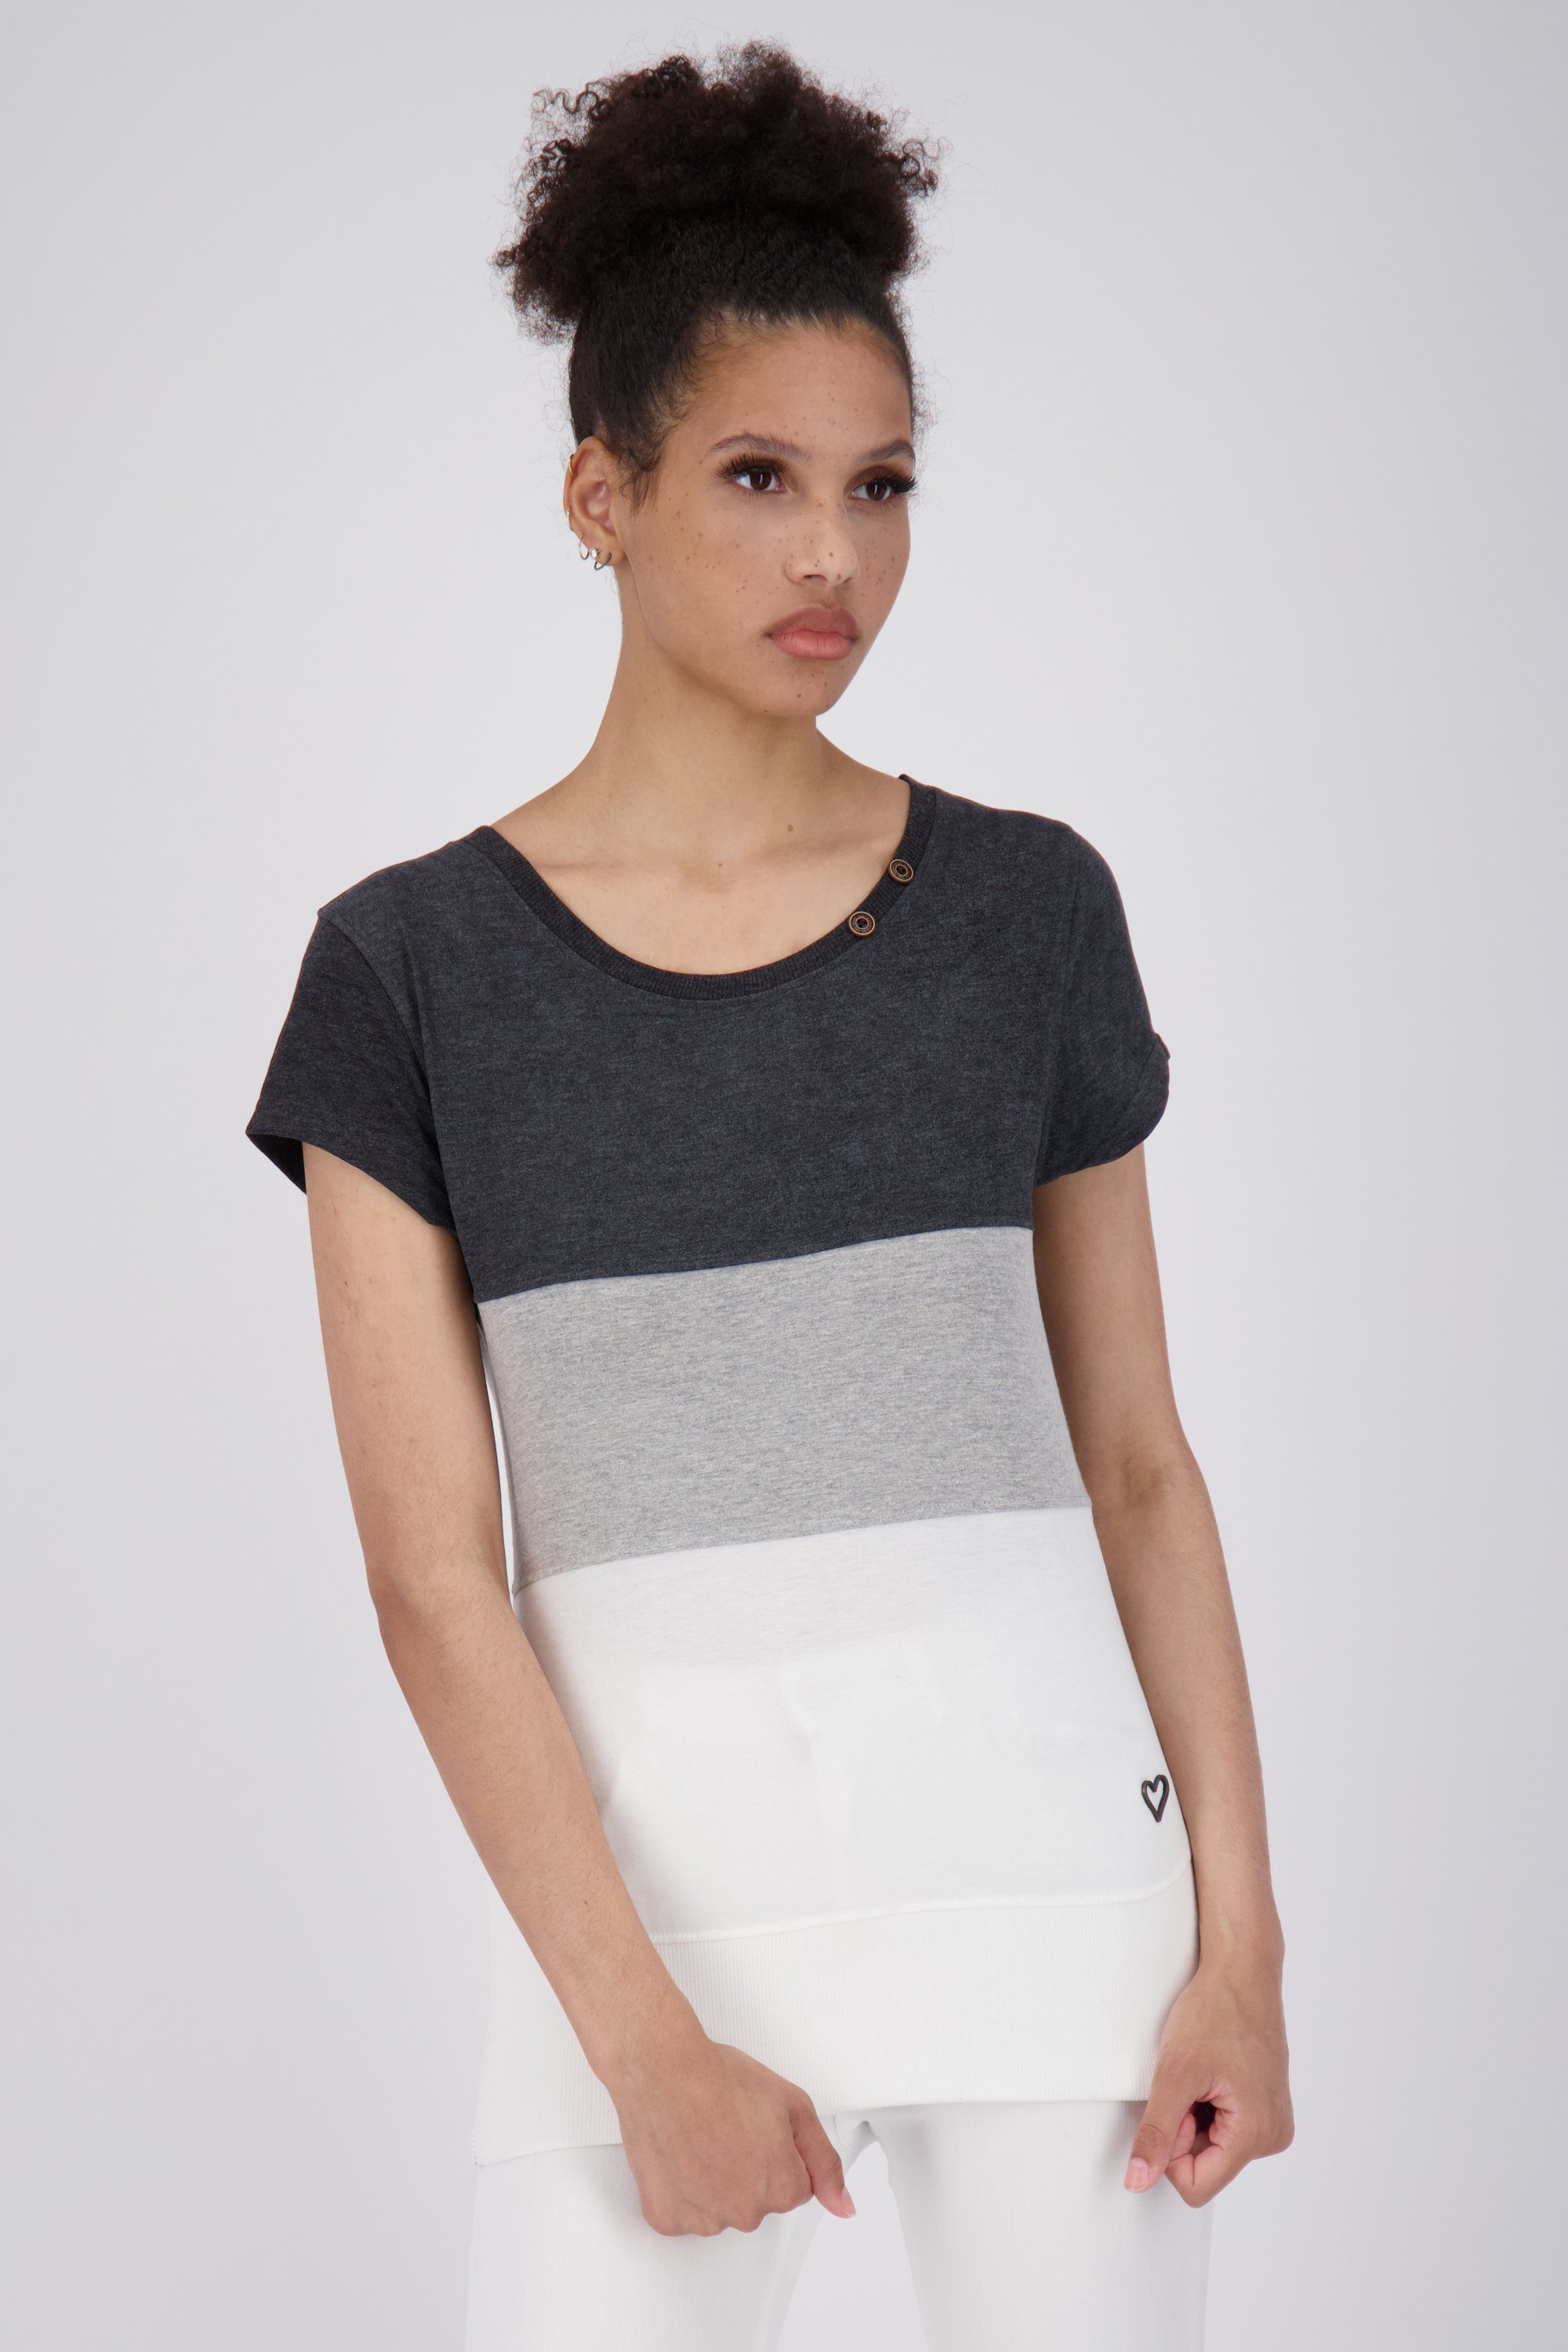 [Sonderverkauf] Alife & T-Shirt A Kickin melange Shirt cloudy CoriAK T-Shirt Damen